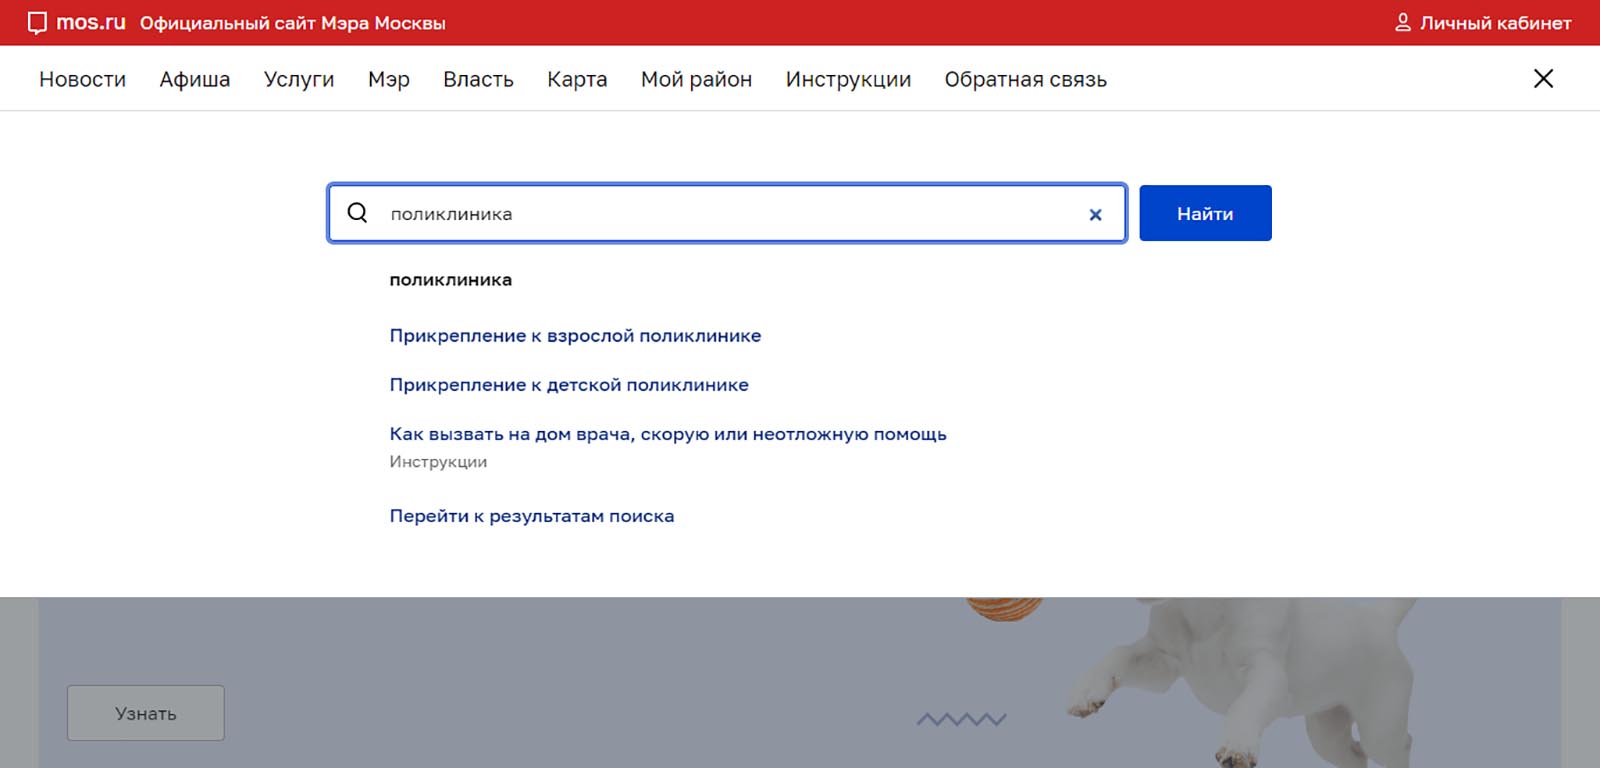 Мос ру. Оповещение о реновации на портале на портале Мос ру. IKMM mos ru.